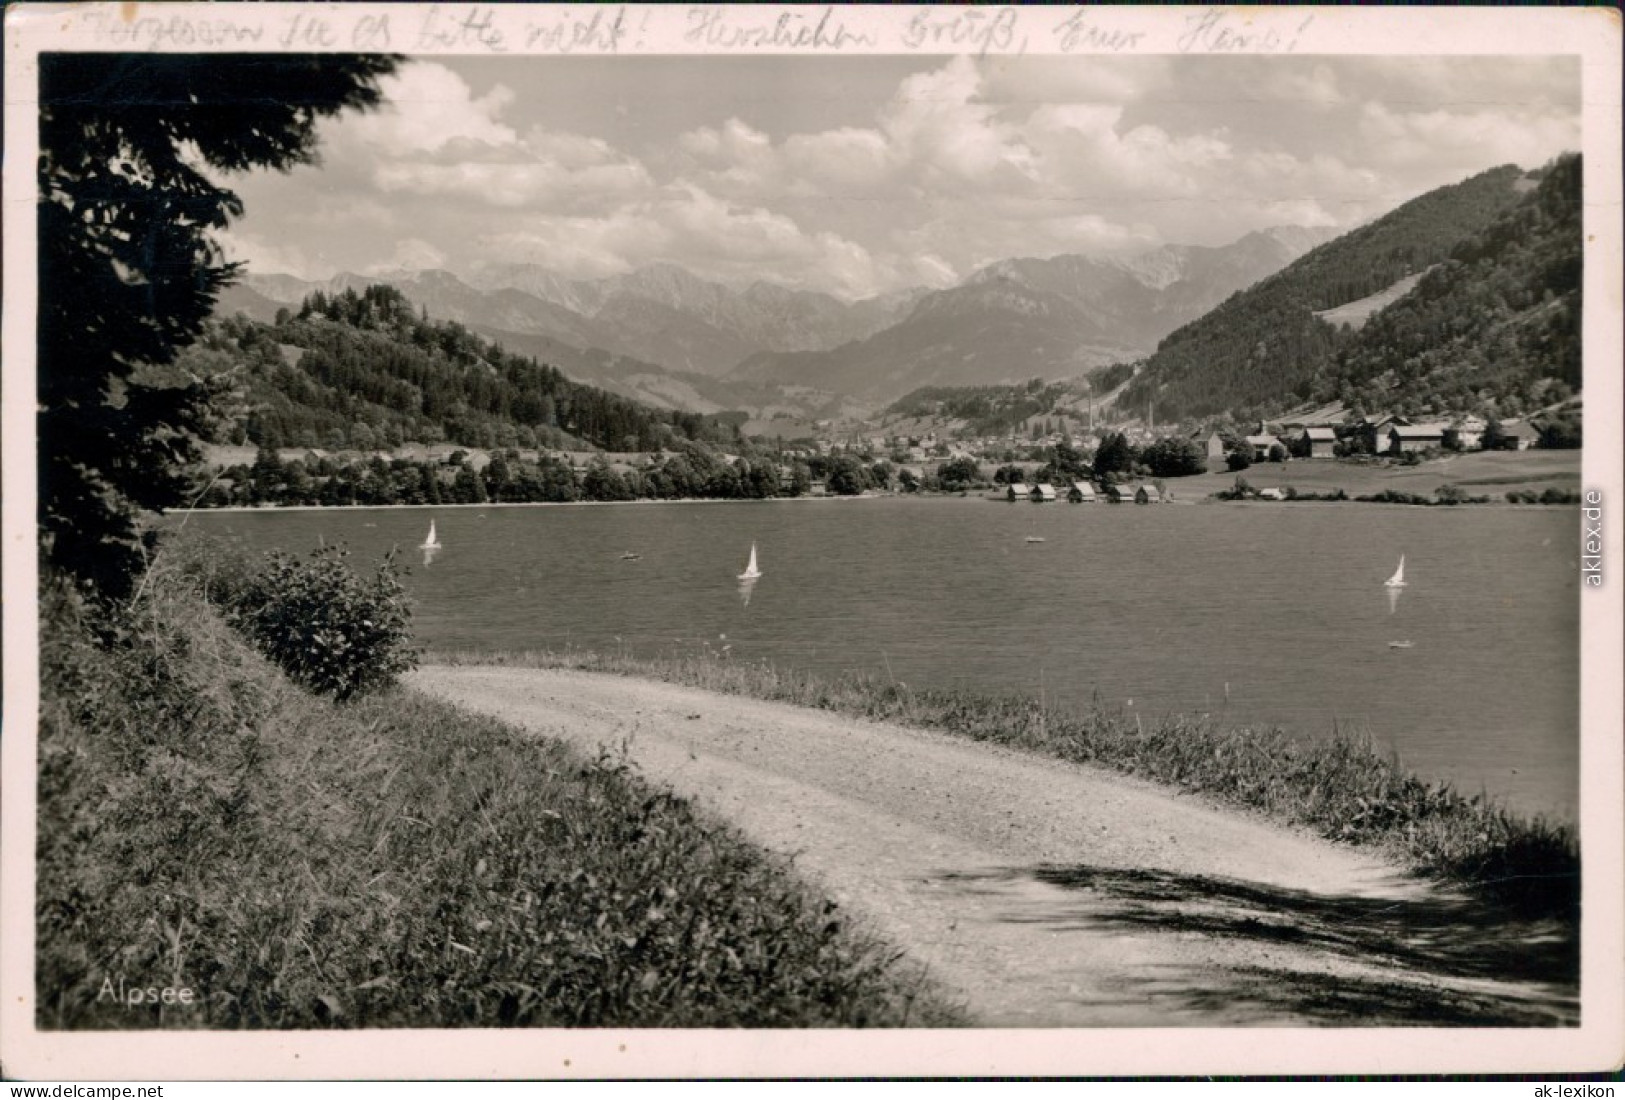 Ansichtskarte Immenstadt (Allgäu) Bühl, Alpsee 1953 - Immenstadt